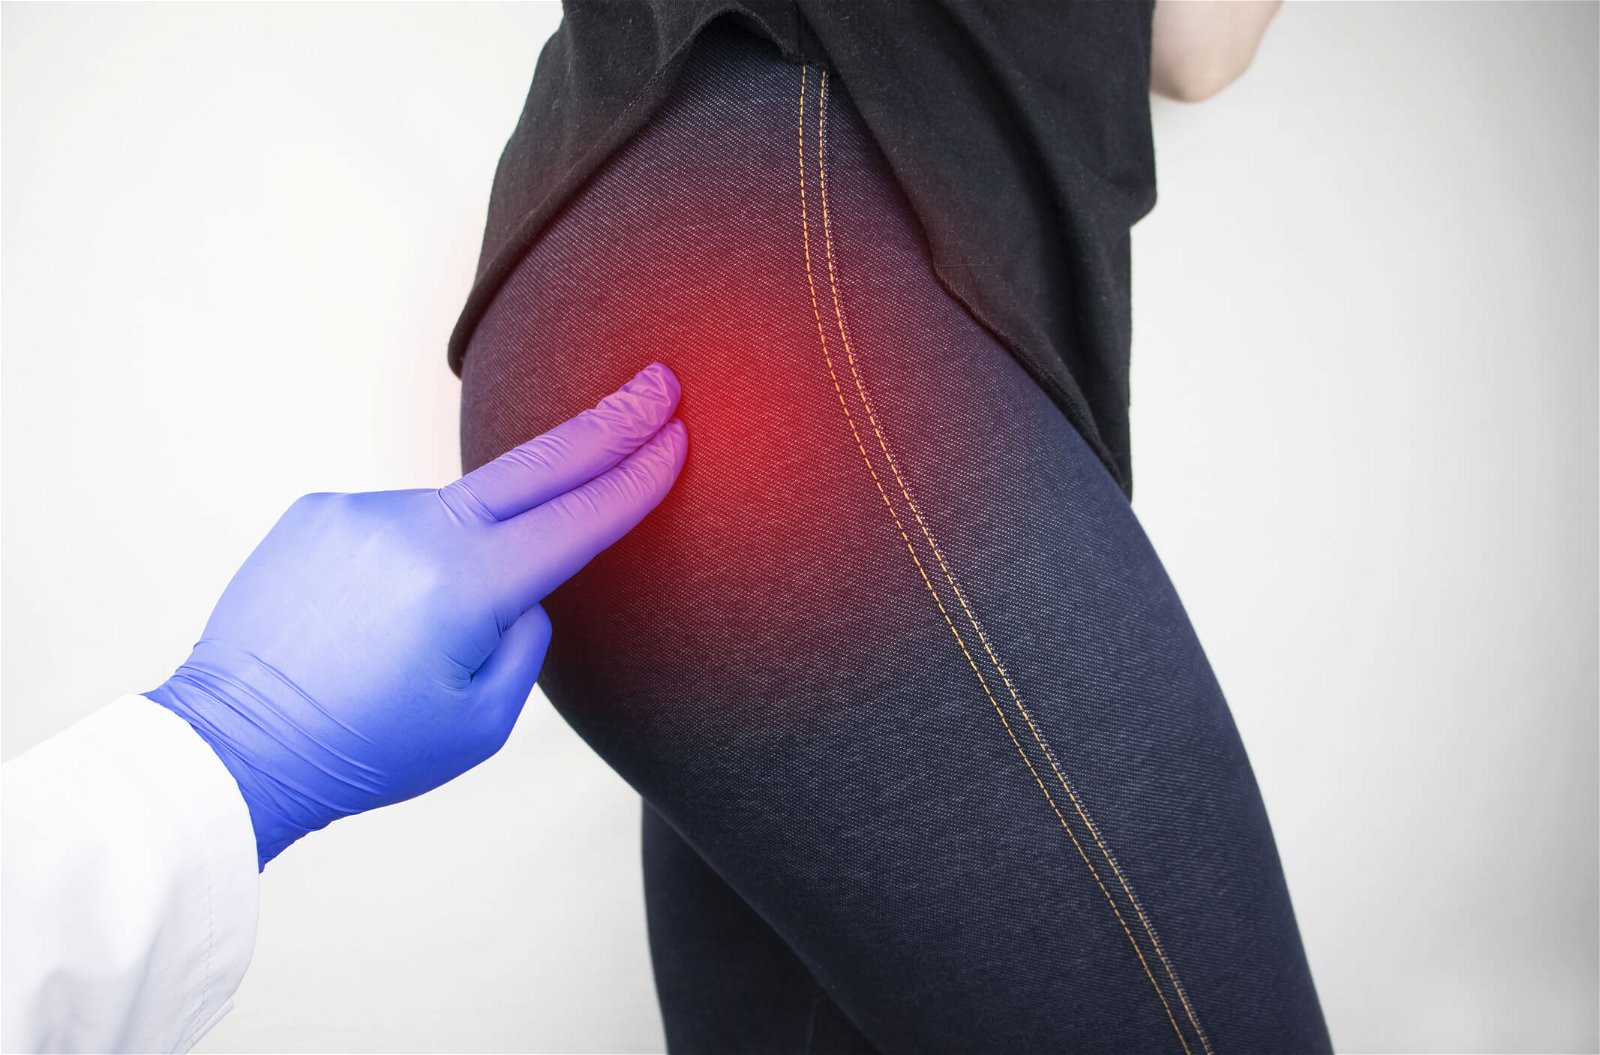 Kaj povzroča bolečine v medenici in kolku?